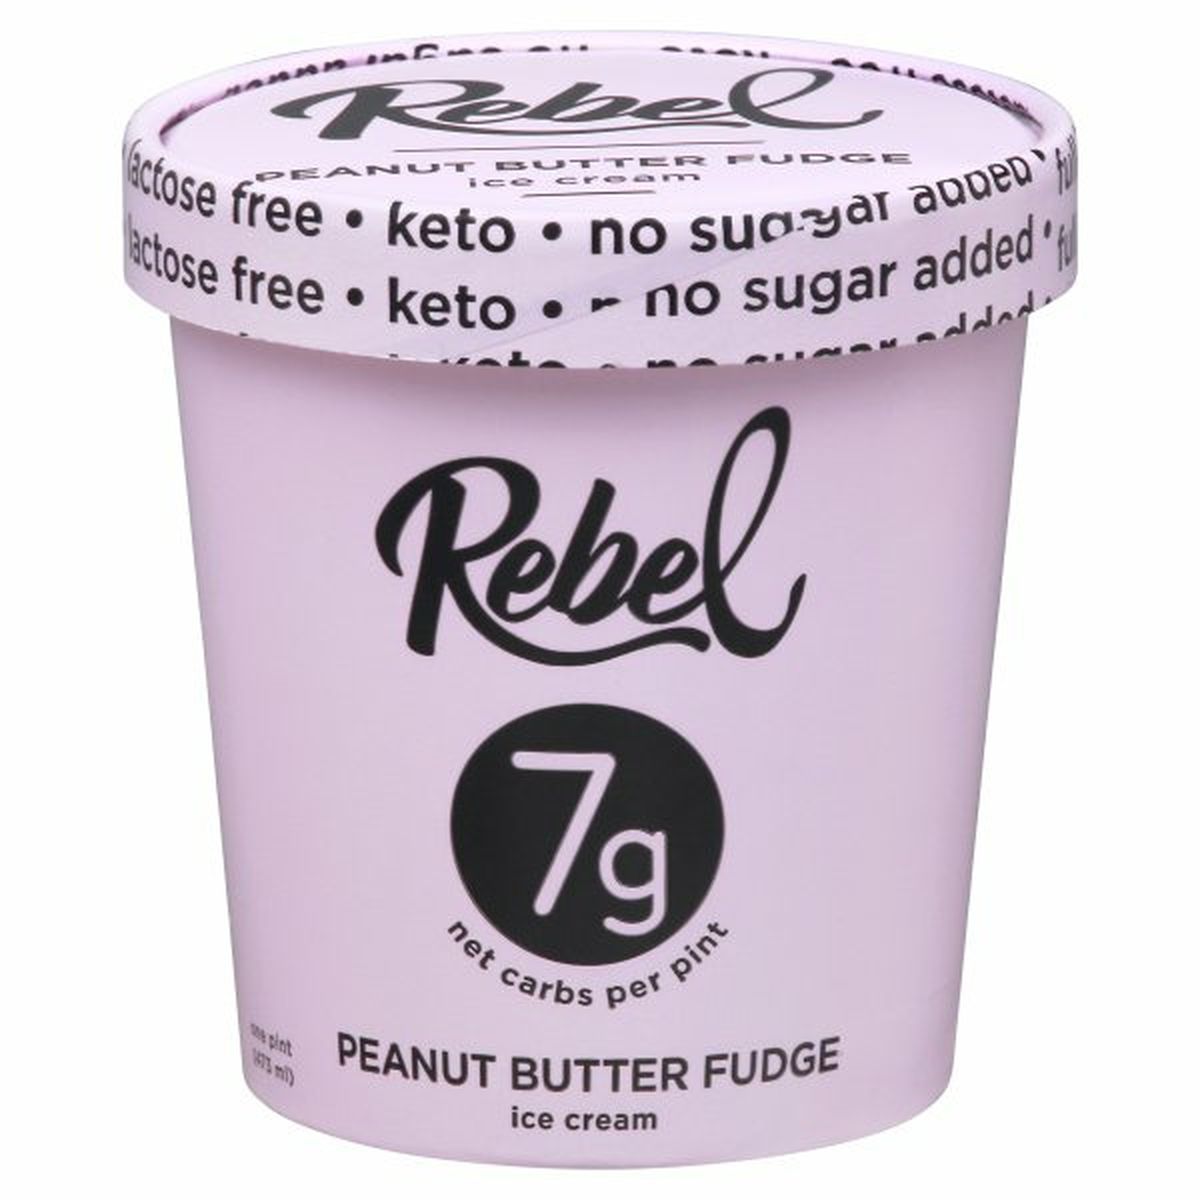 Calories in Rebel Ice Cream, Peanut Butter Fudge